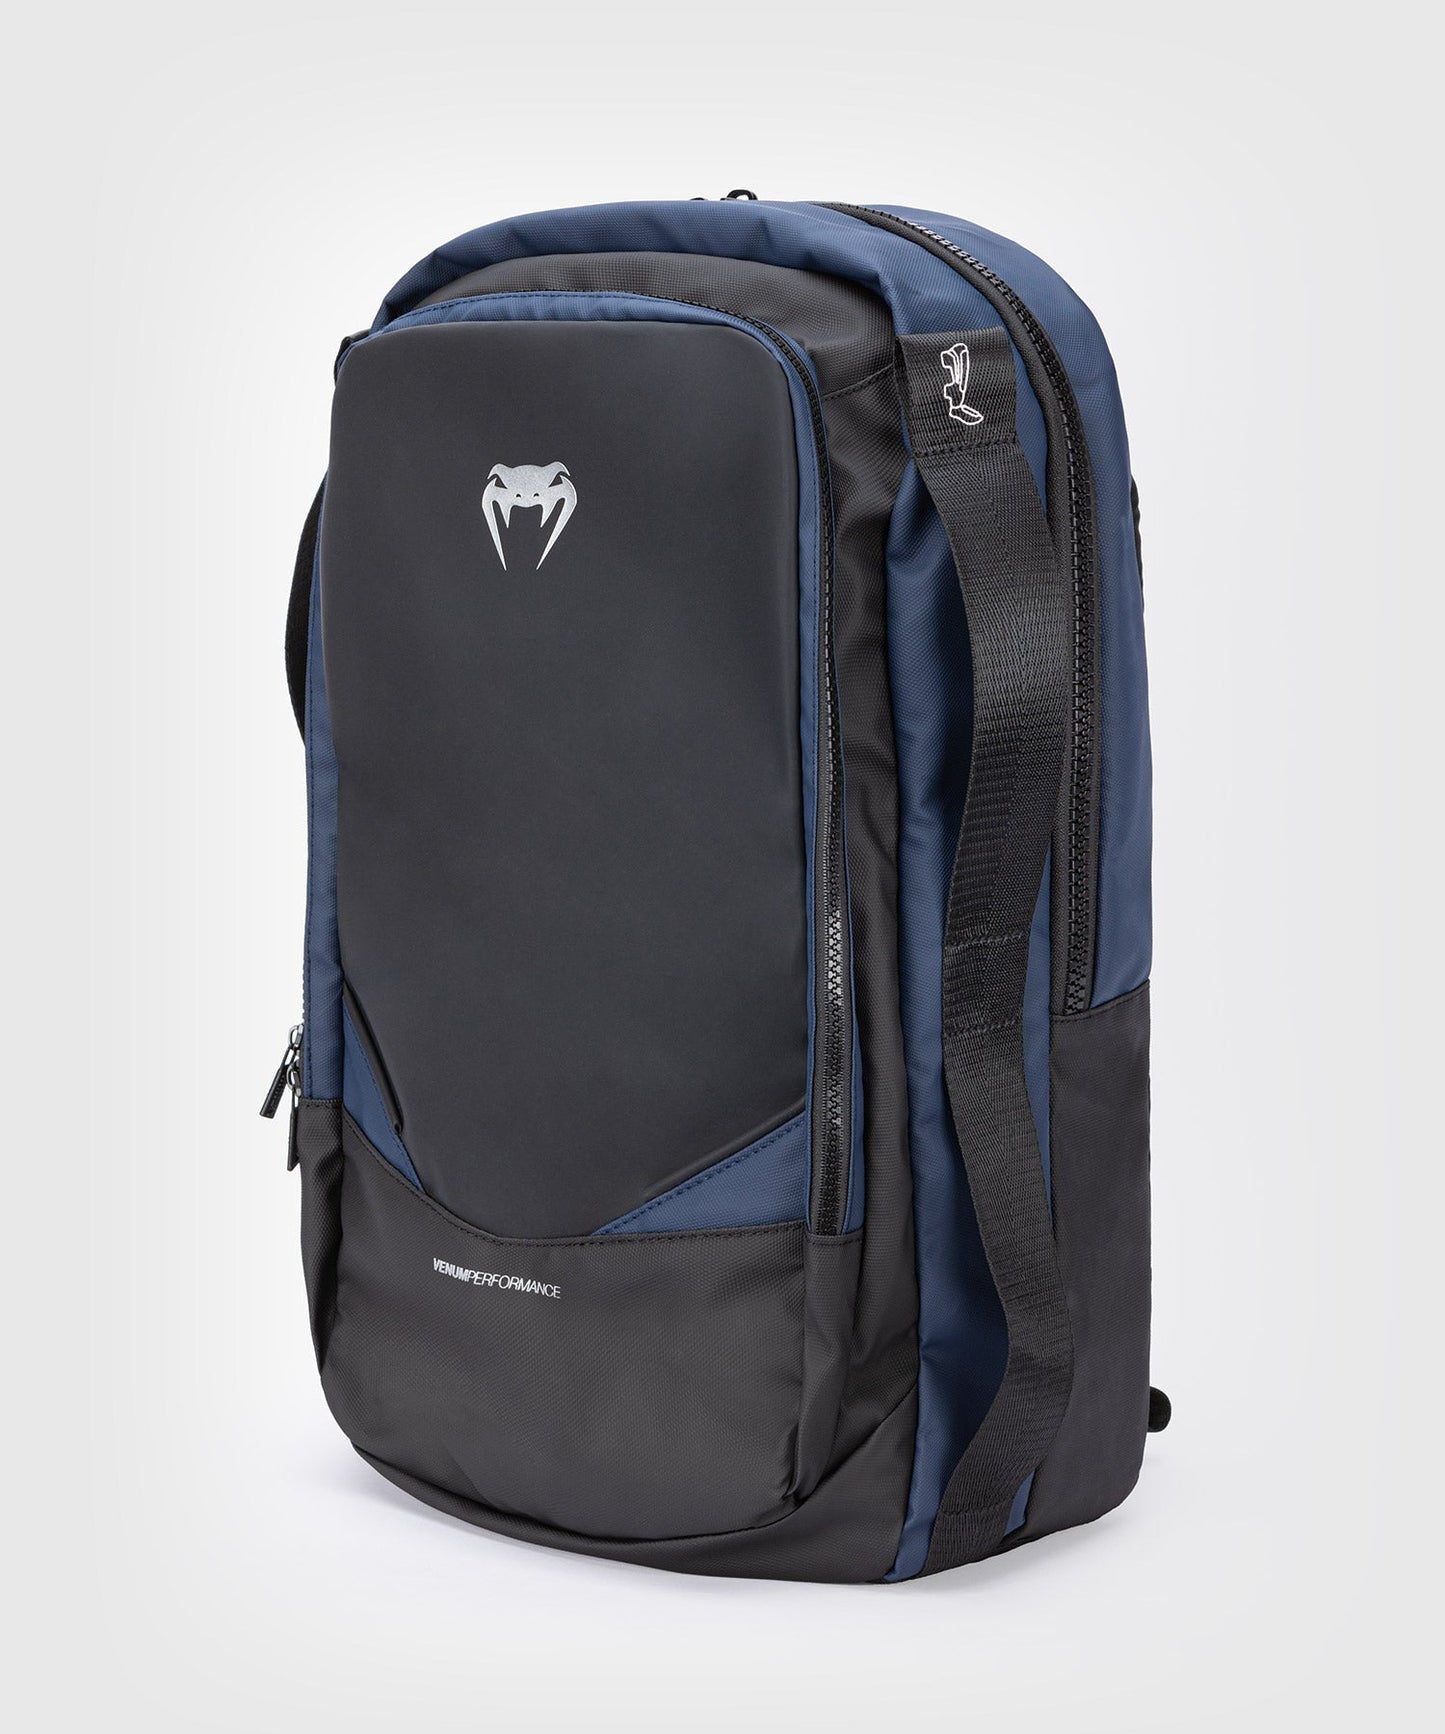 Venum Evo 2 Backpack - Schwarz/Blau